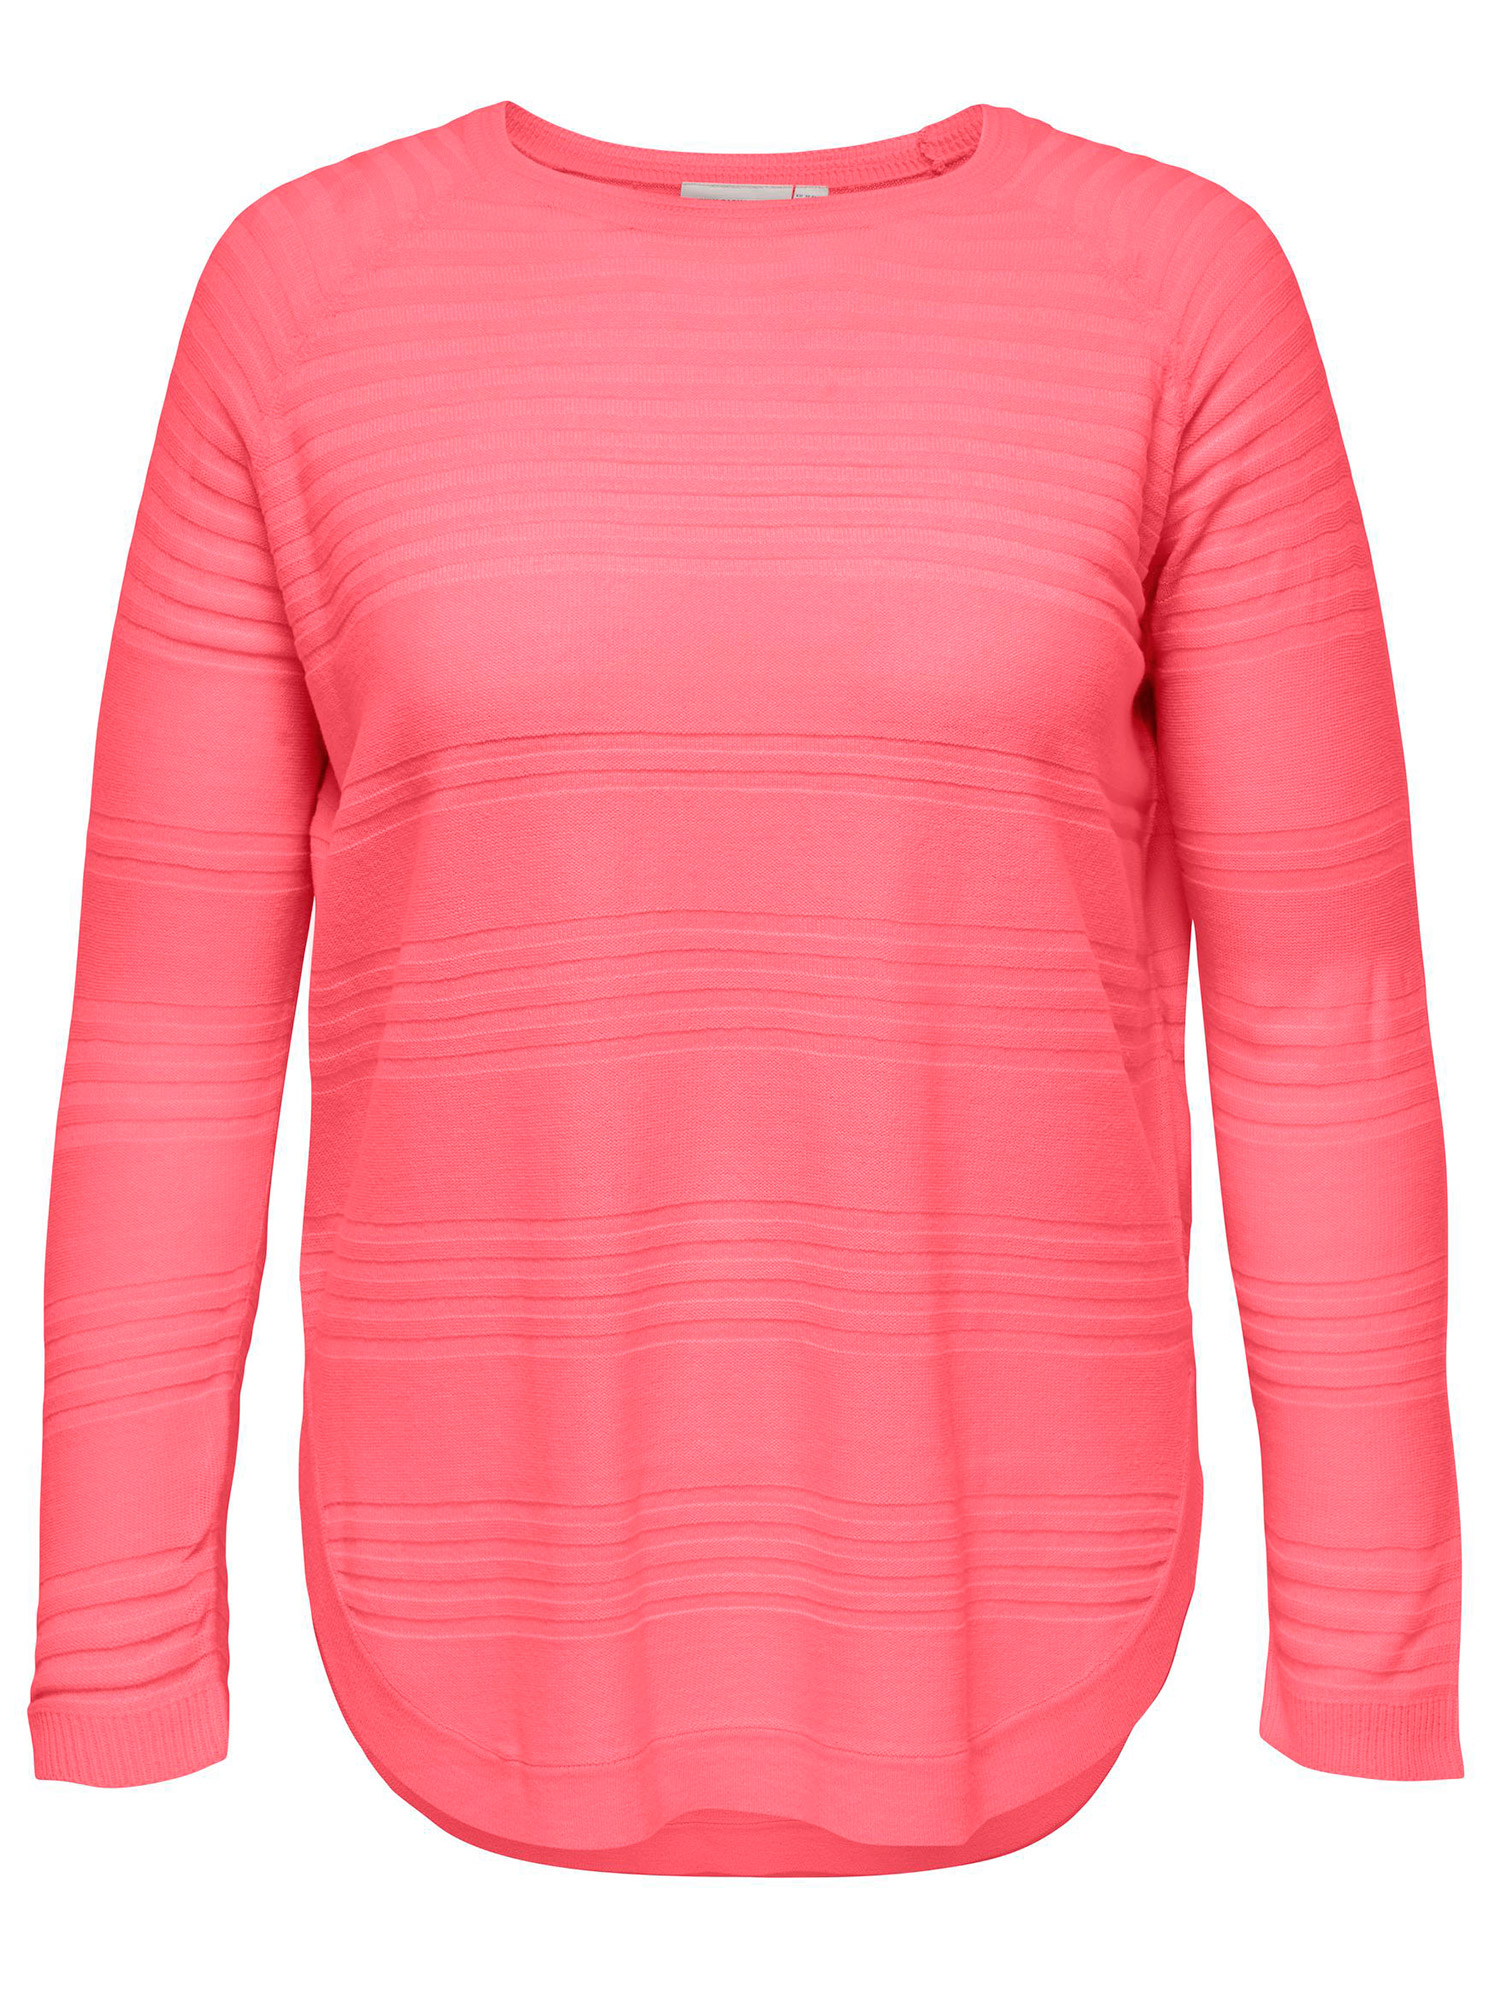 NEWAIRPLAIN - Korallrød strikket genser fra Only Carmakoma